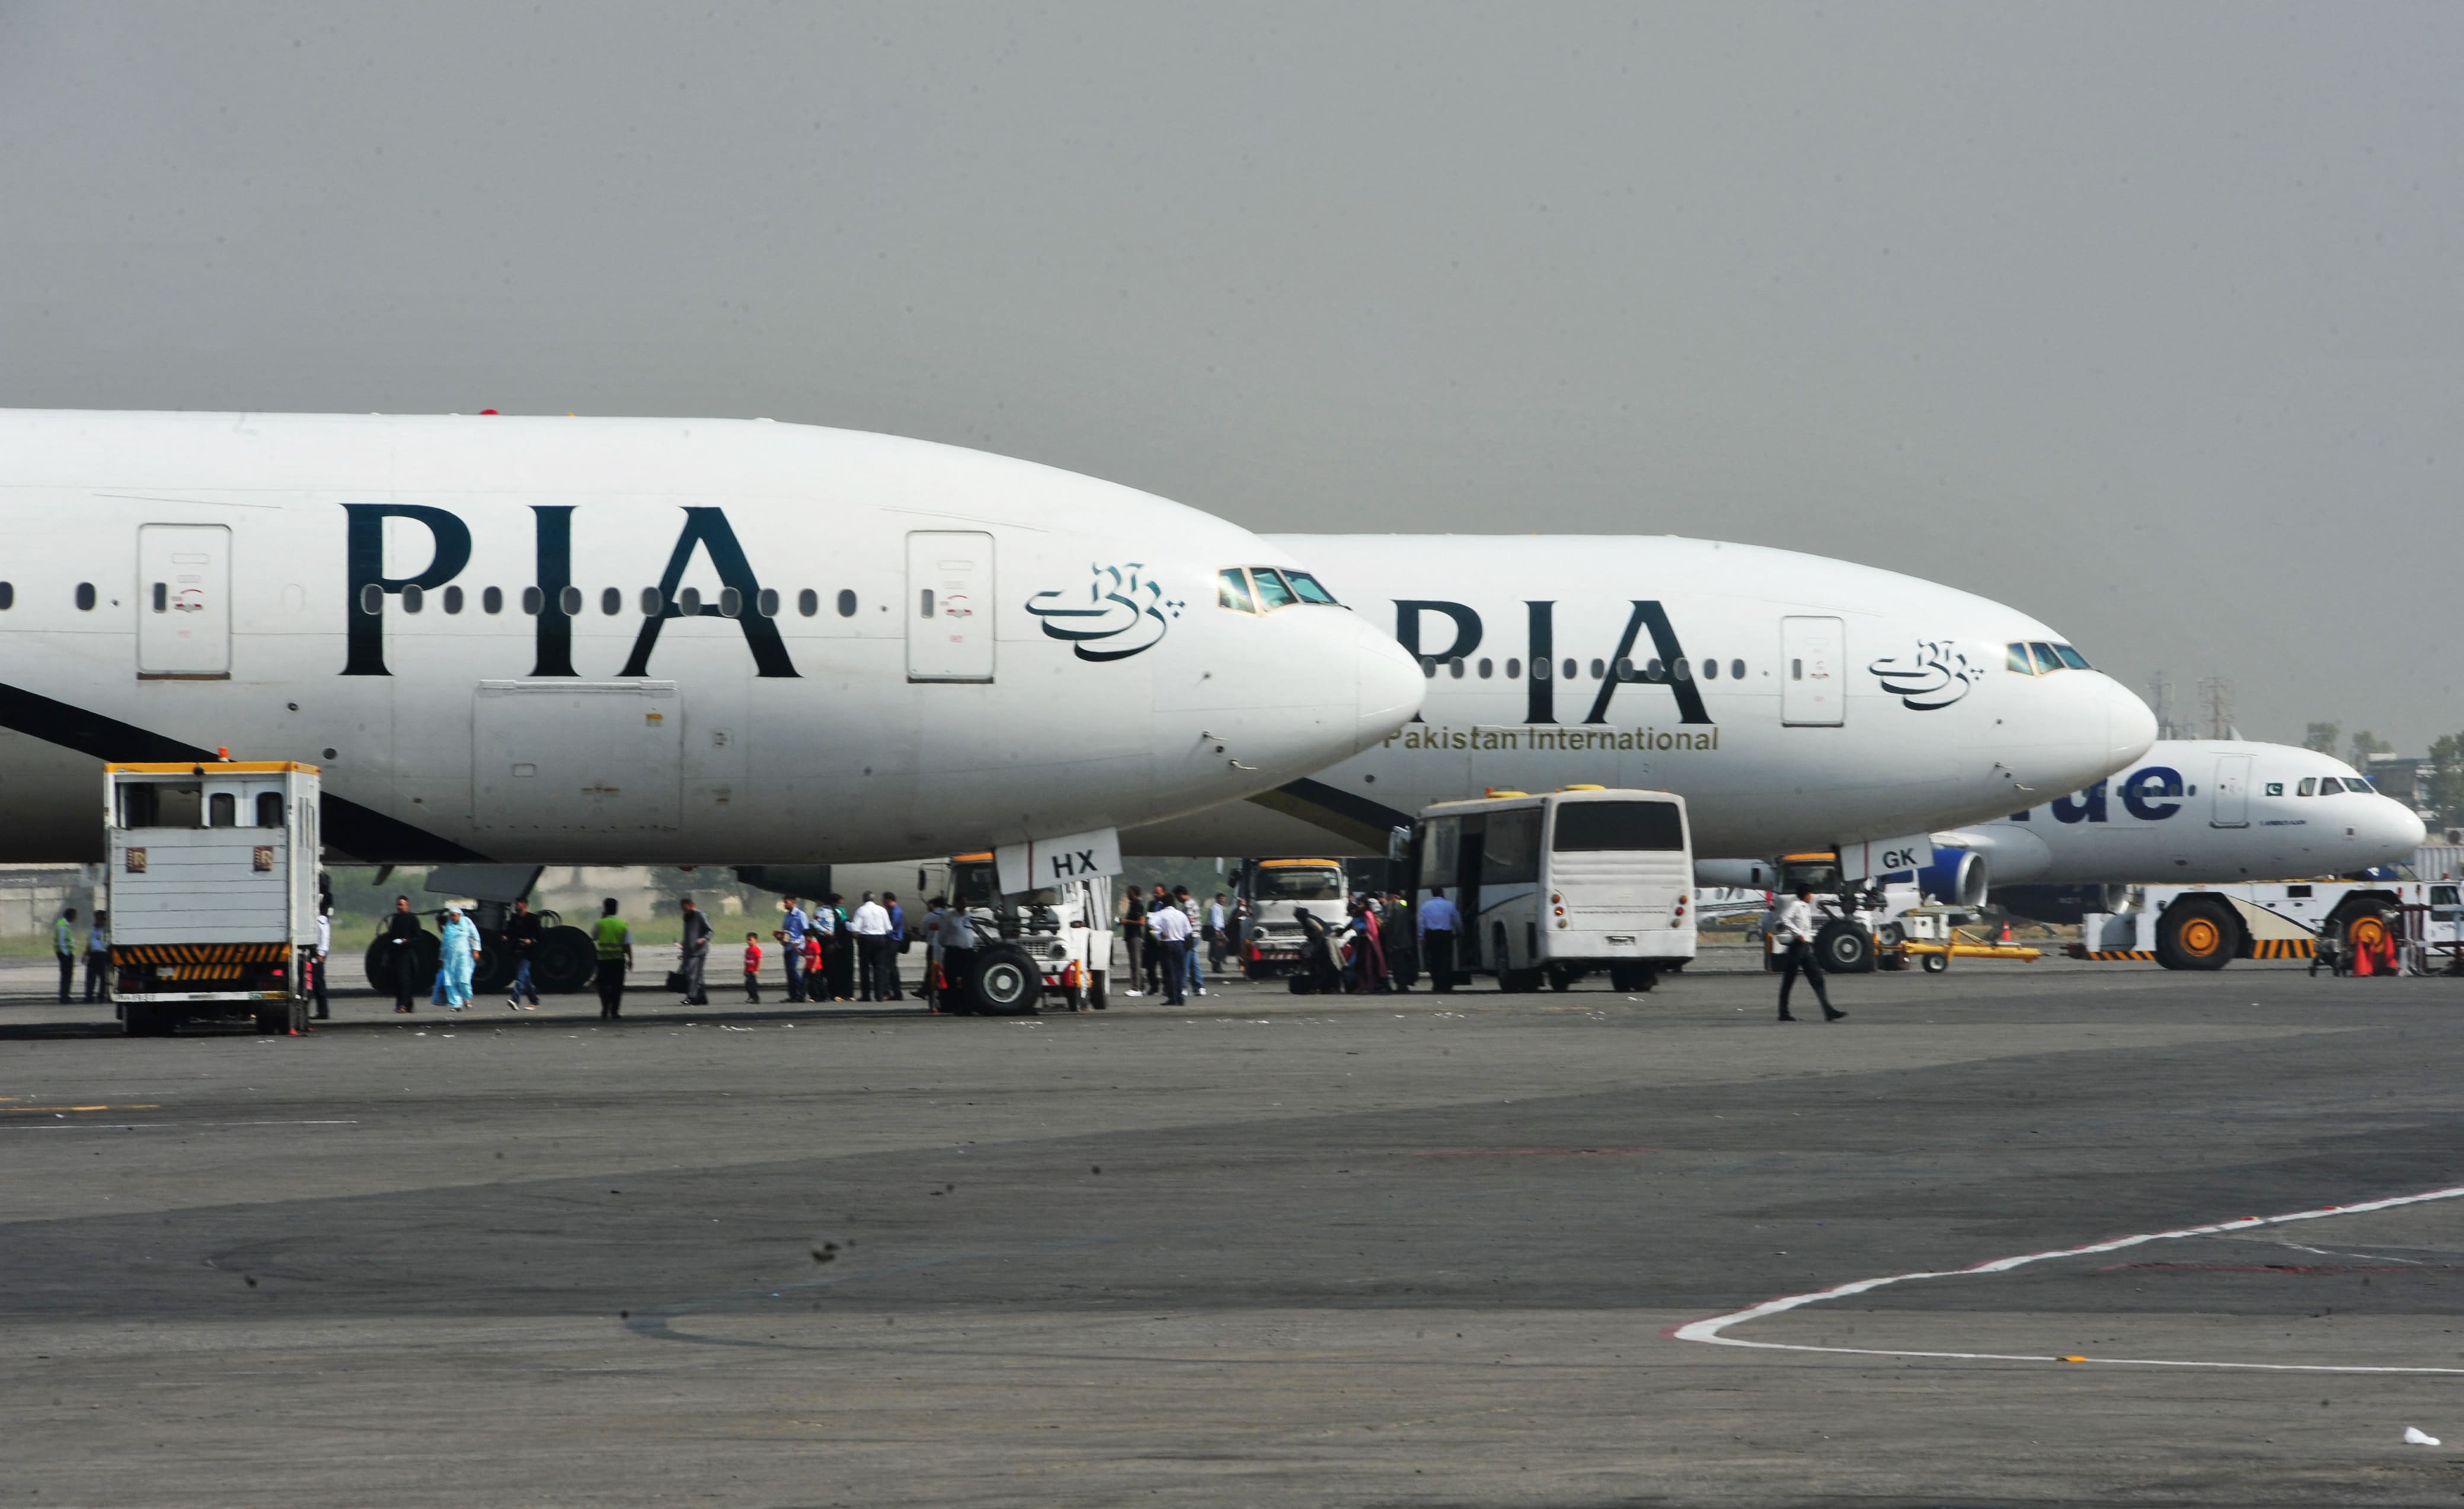 Afhanistan: la compagnie aérienne PIA annonce un premier vol commercial Islamabad-Kaboul lundi